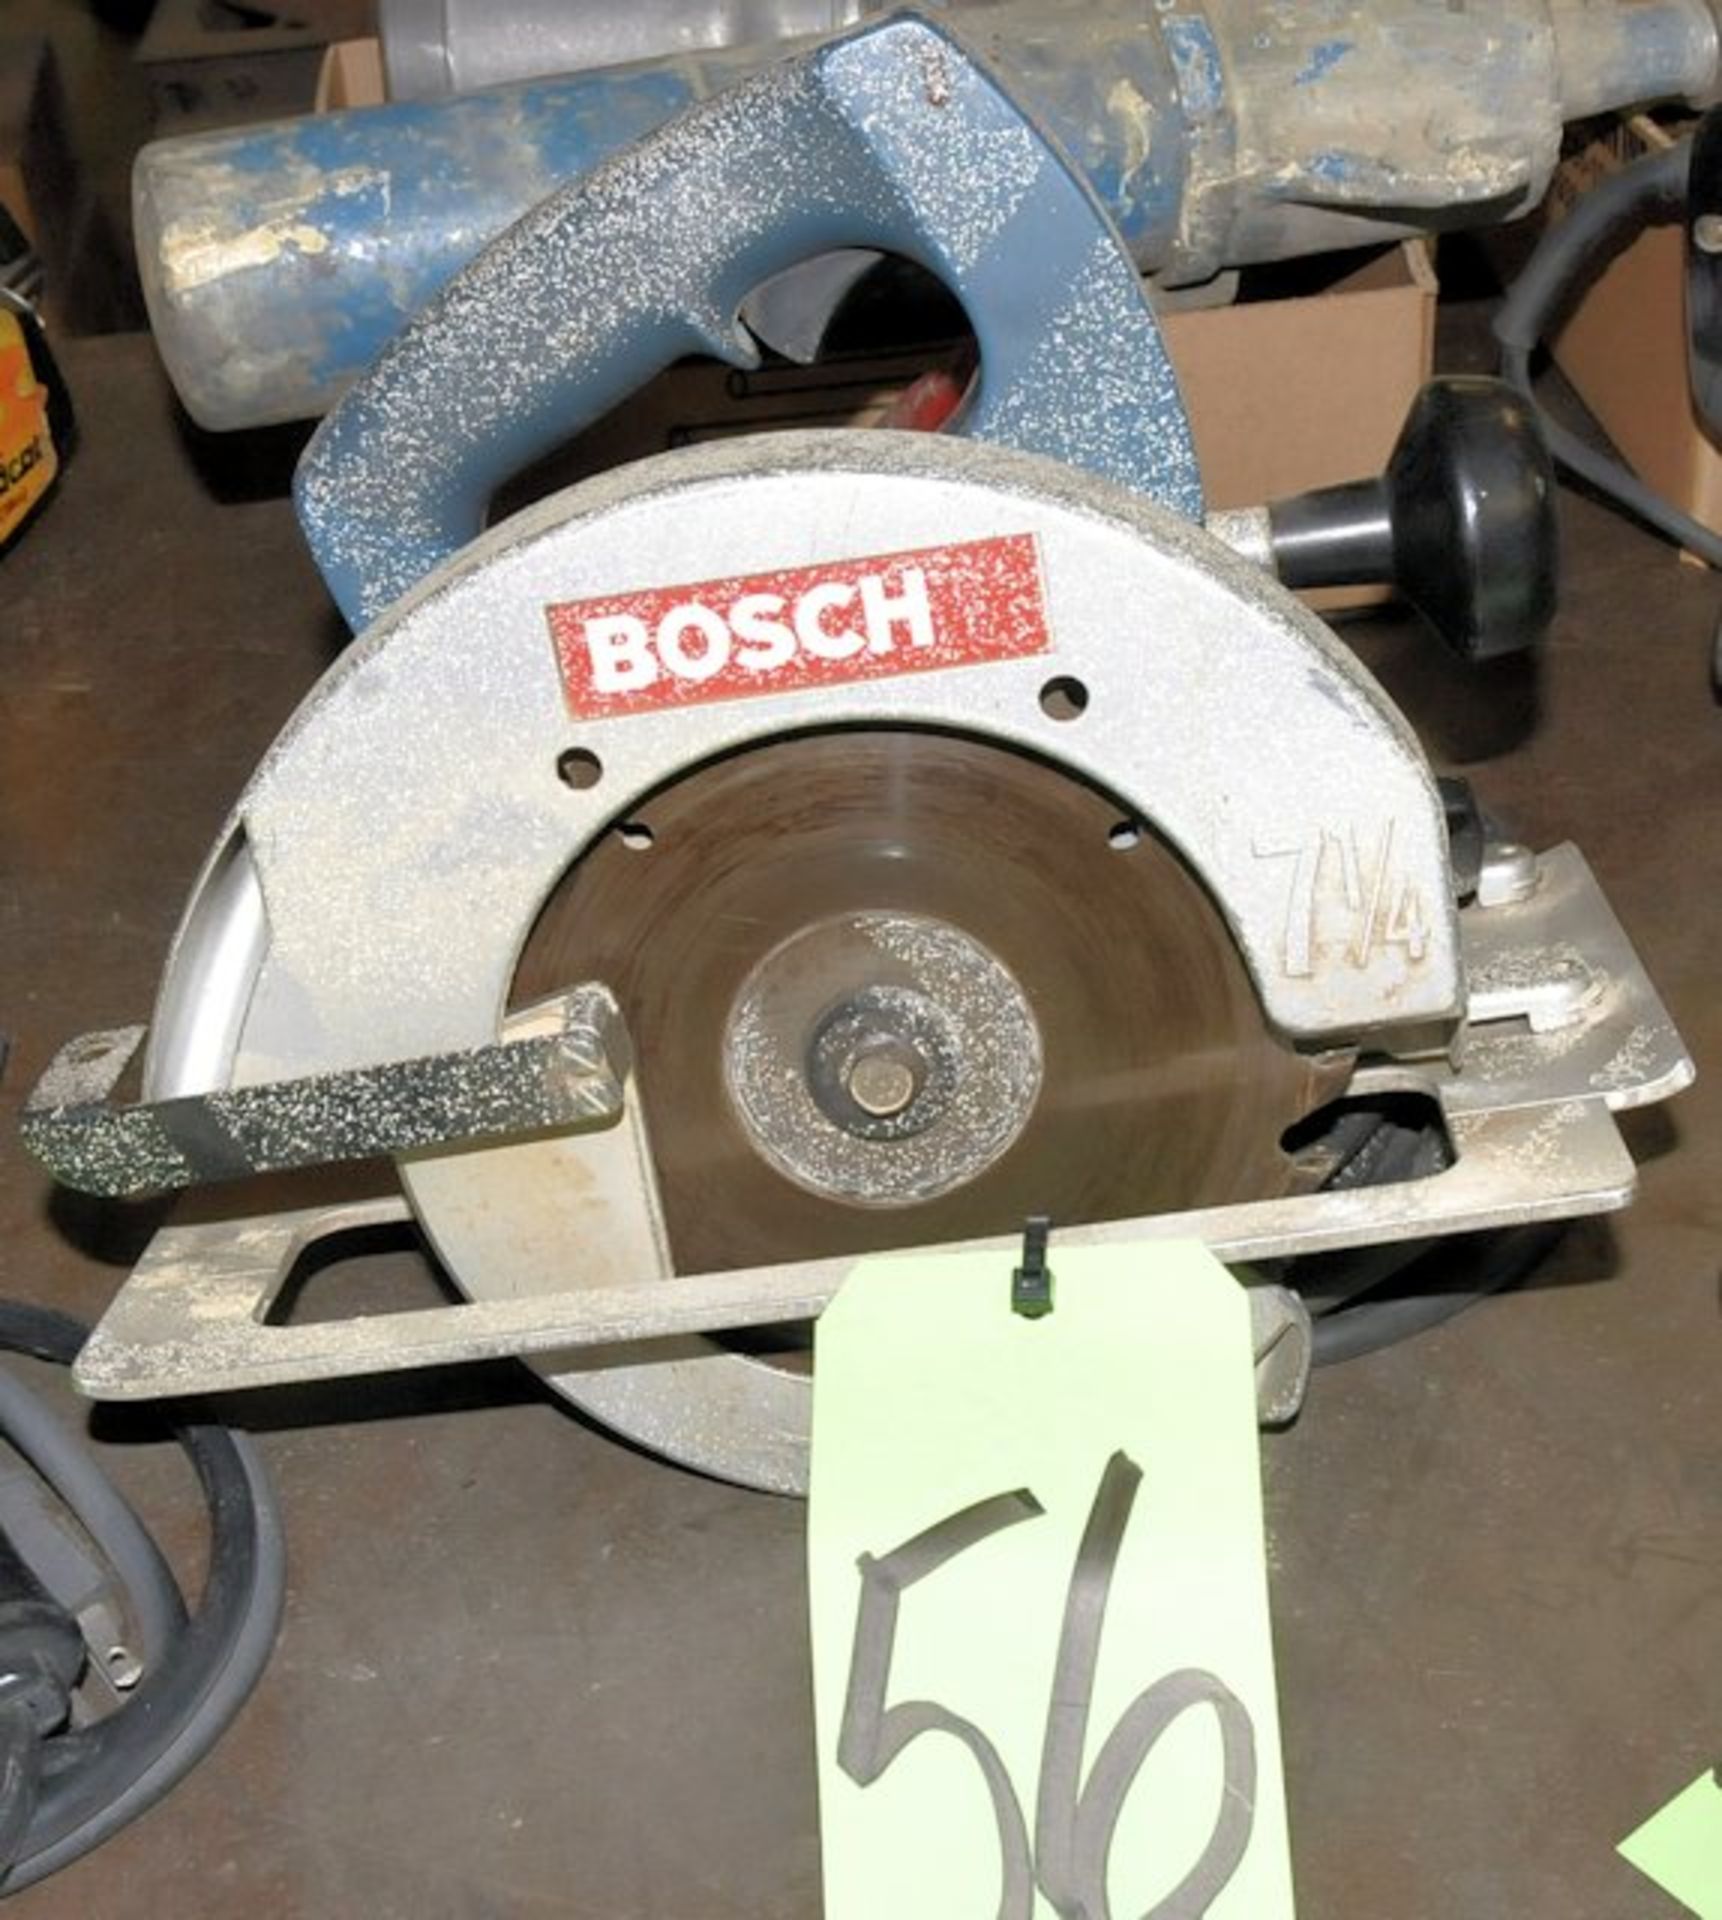 Bosch 7 1/4" Circular Saw